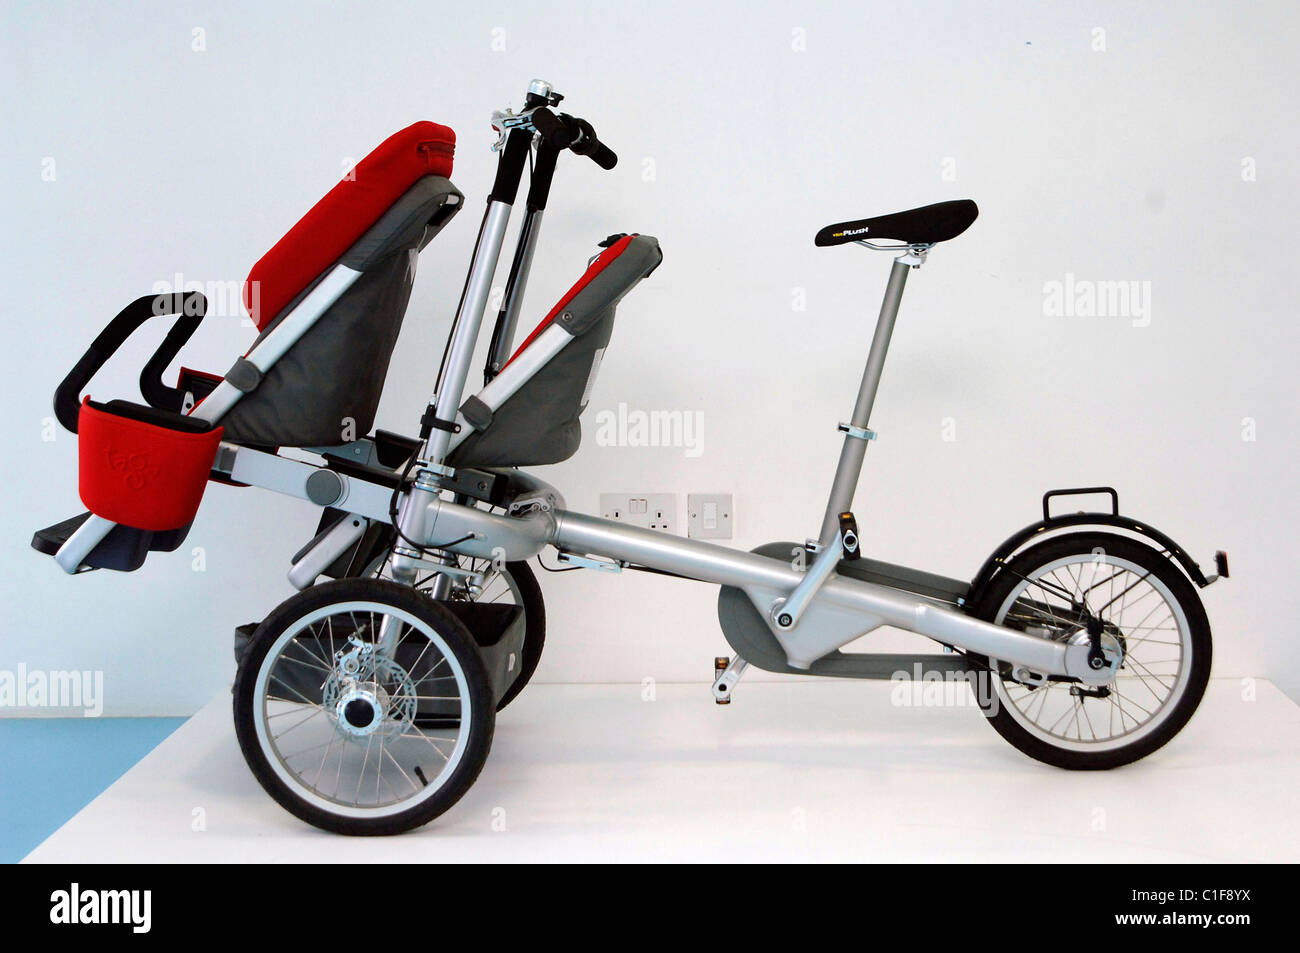 Start des neuen Taga entworfen Kinderwagen Fahrrad/Kinderwagen im Design  Museum London, England - 06.05.09 Vince Maher Stockfotografie - Alamy